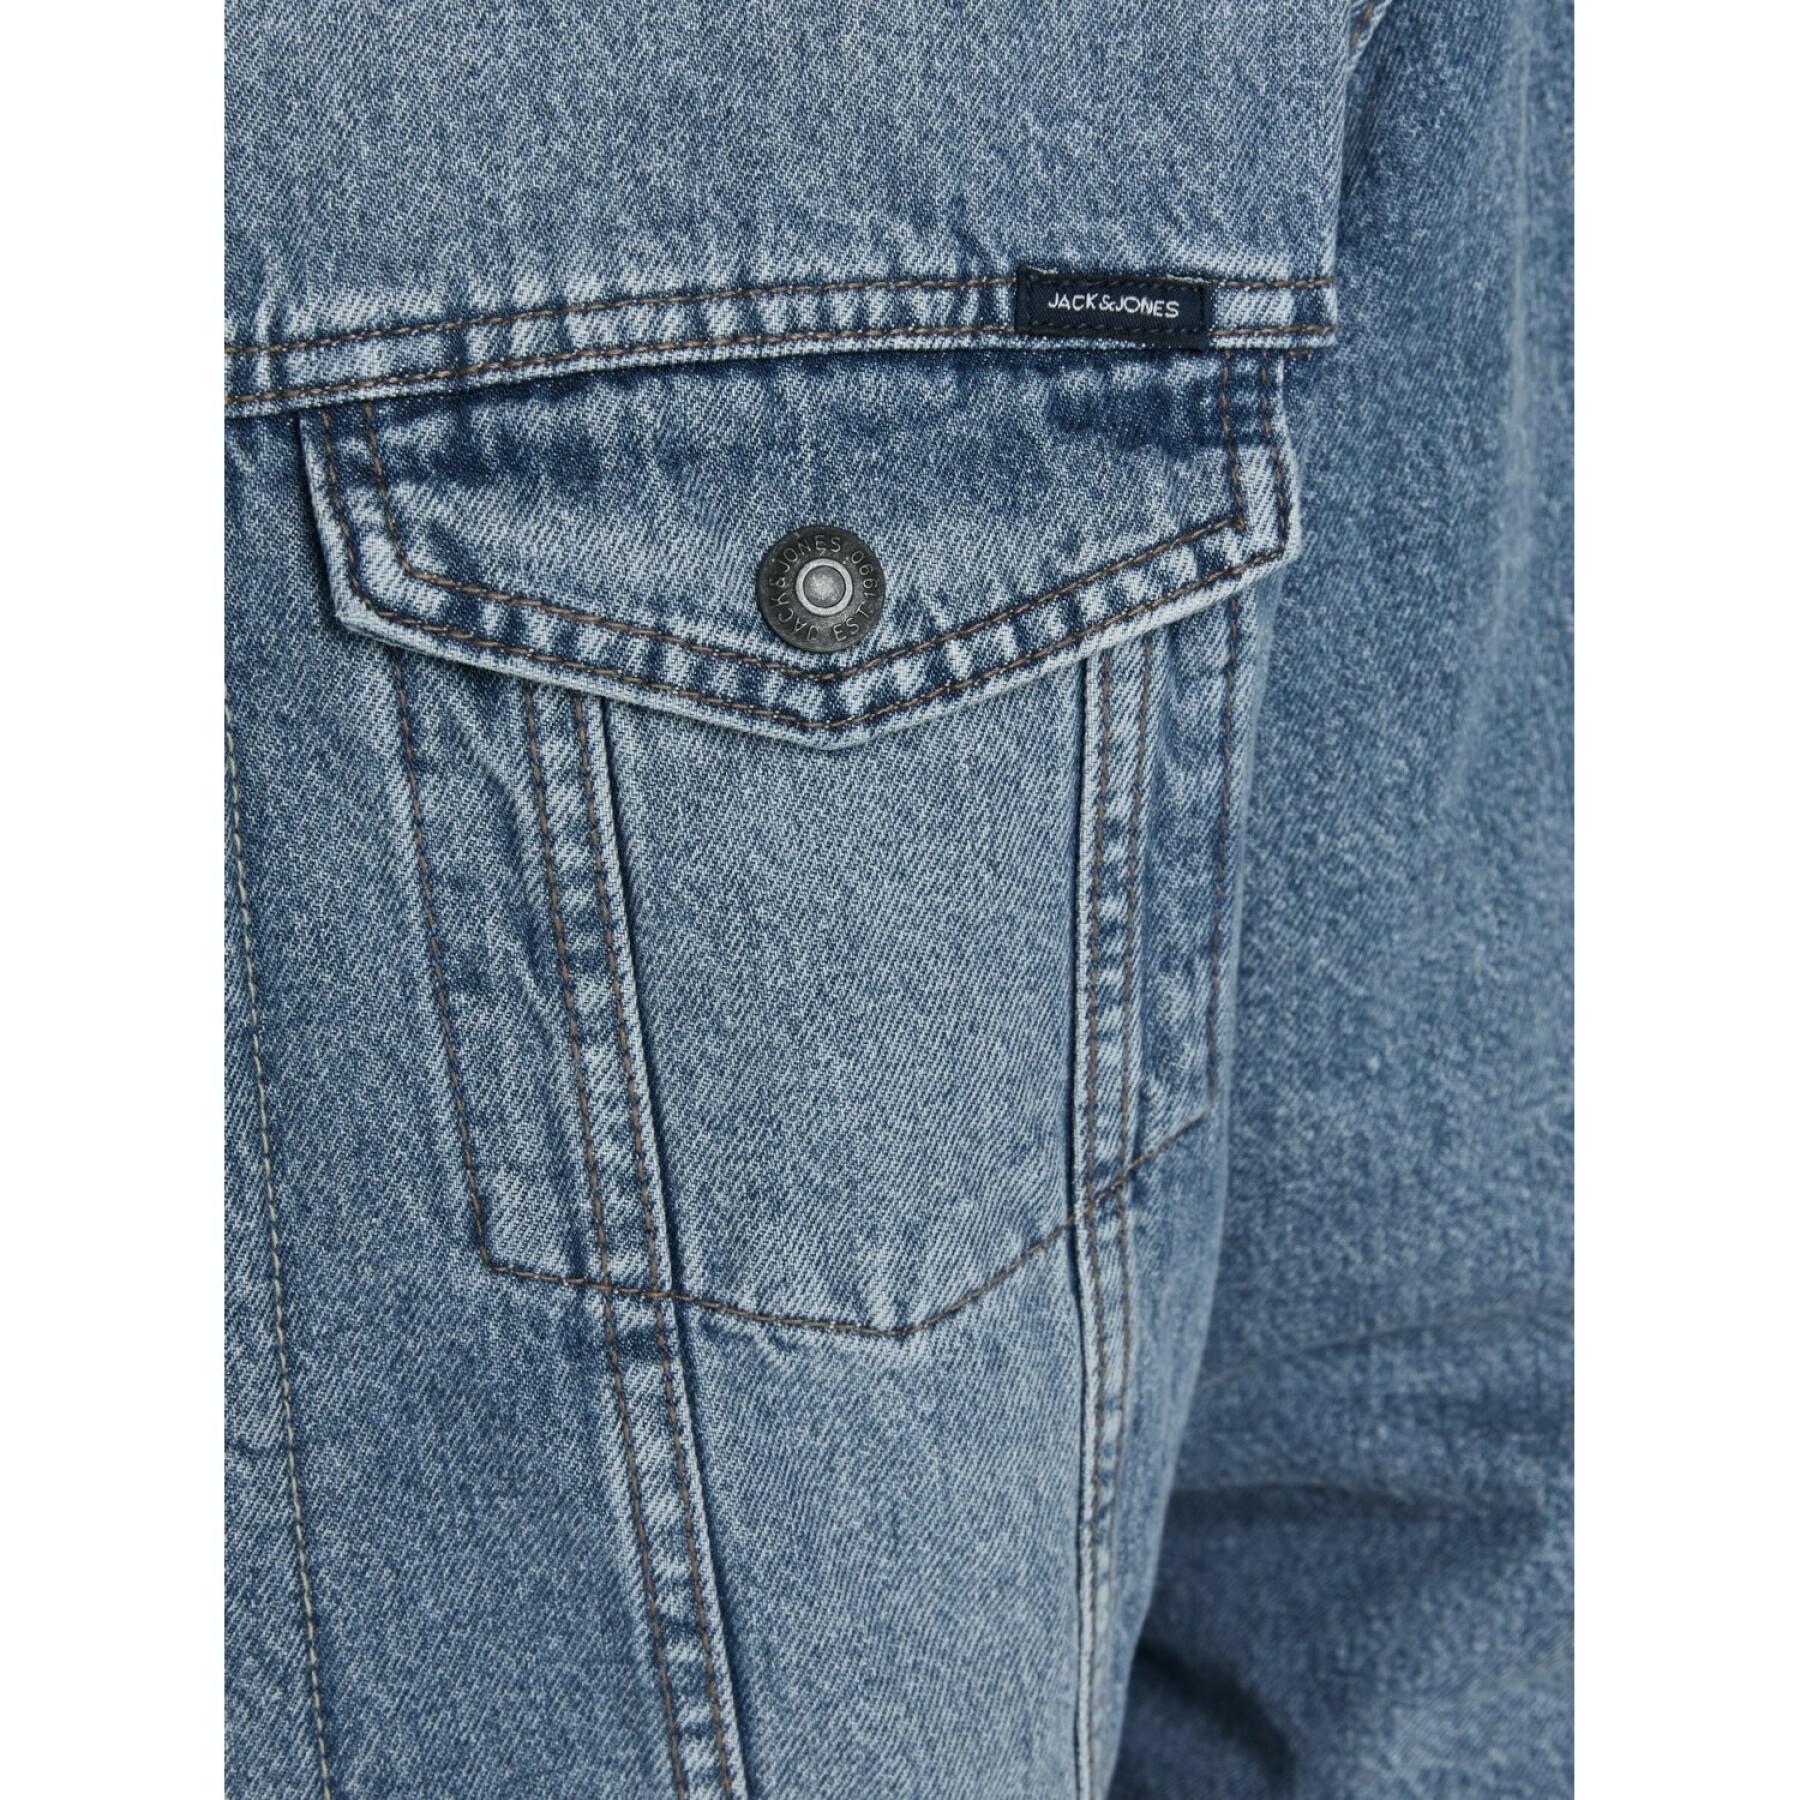 Kurtka dżinsowa Jack & Jones jean jacket akm 766